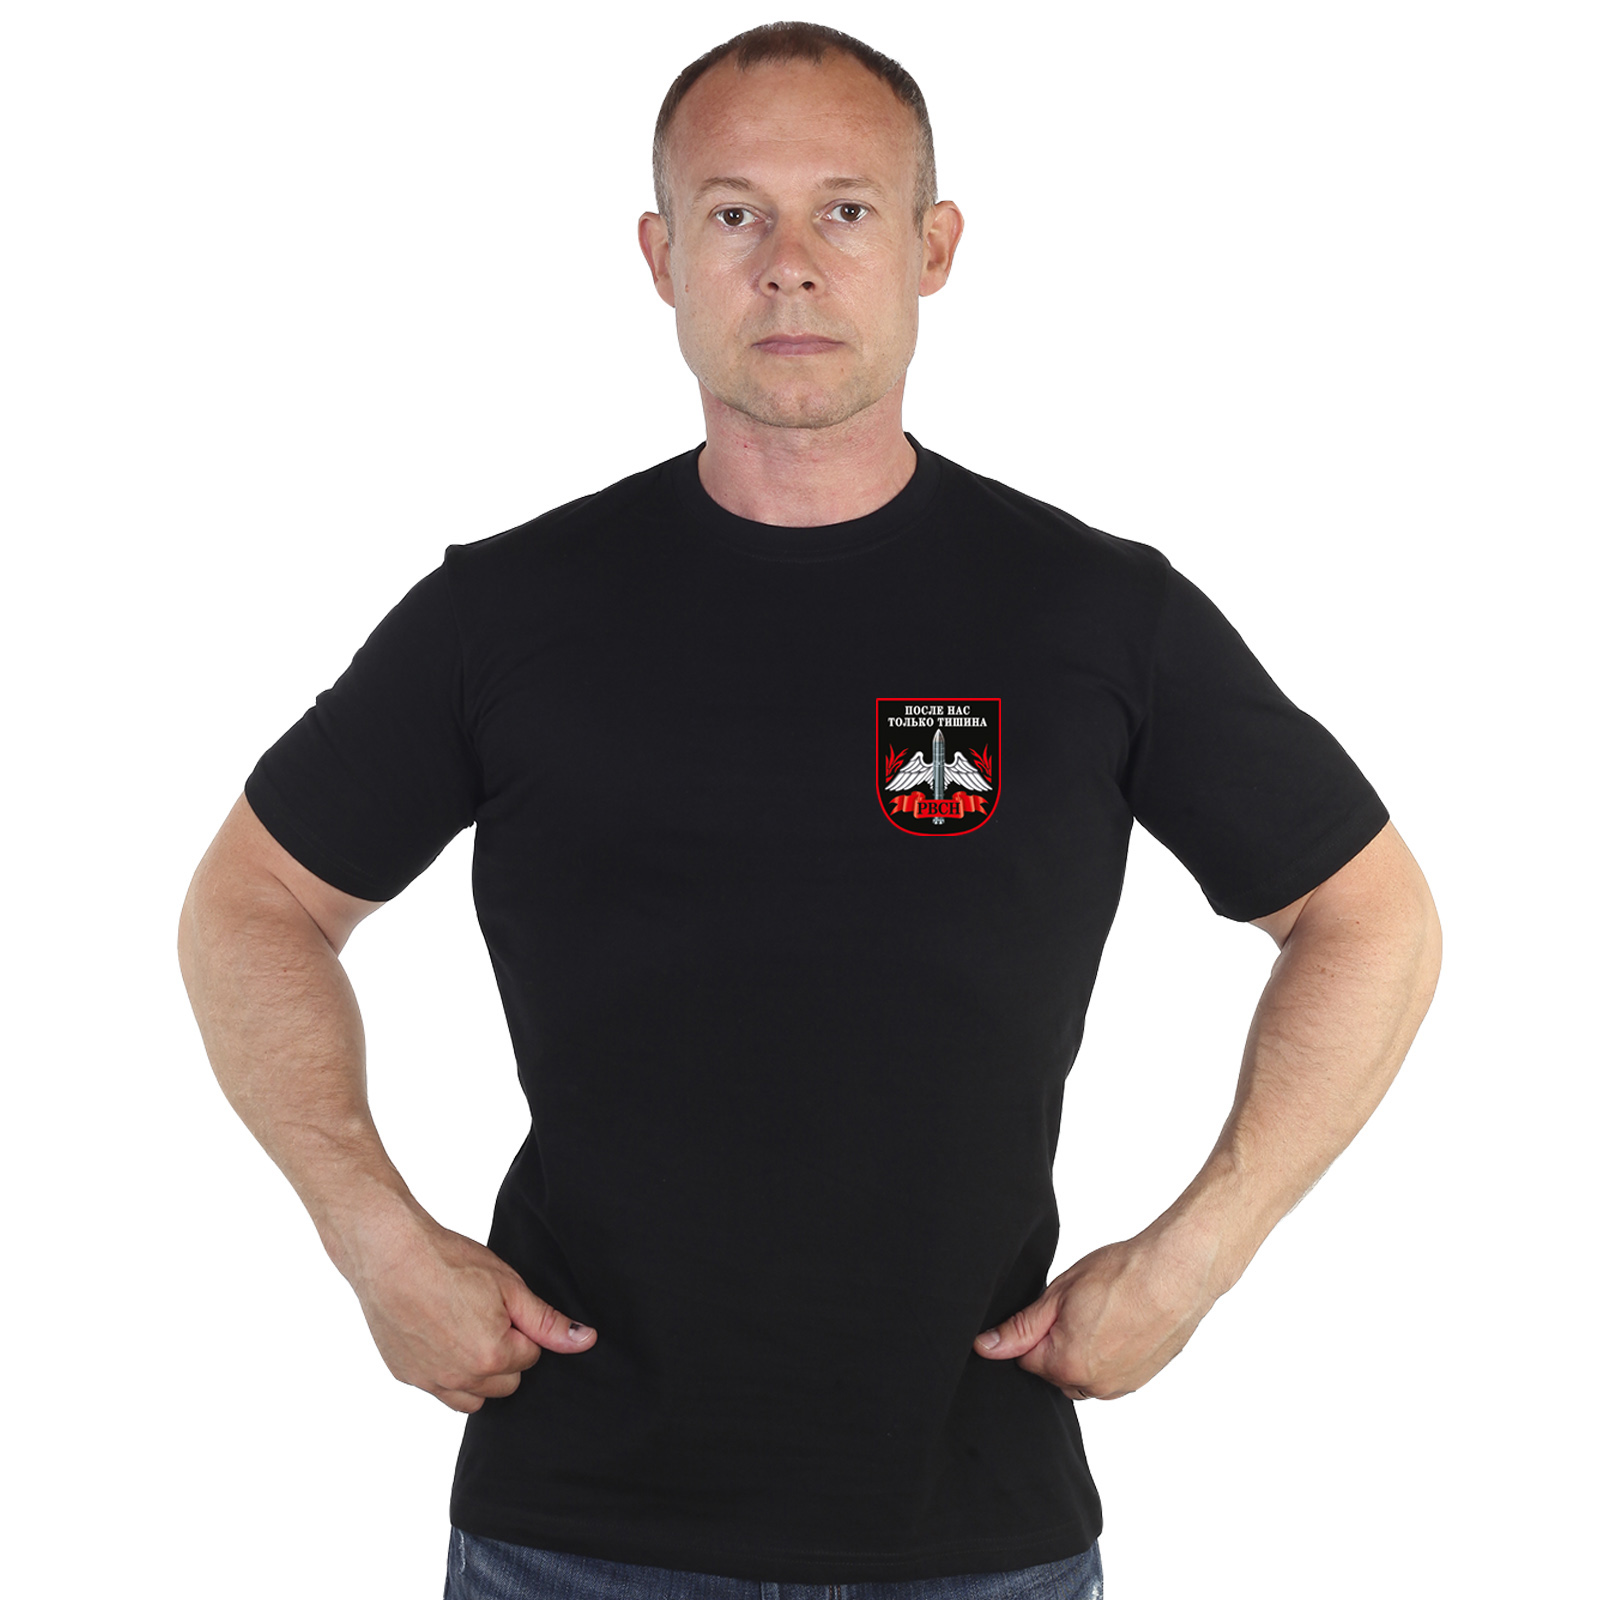 Чёрная футболка с термотрансфером "РВСН" 